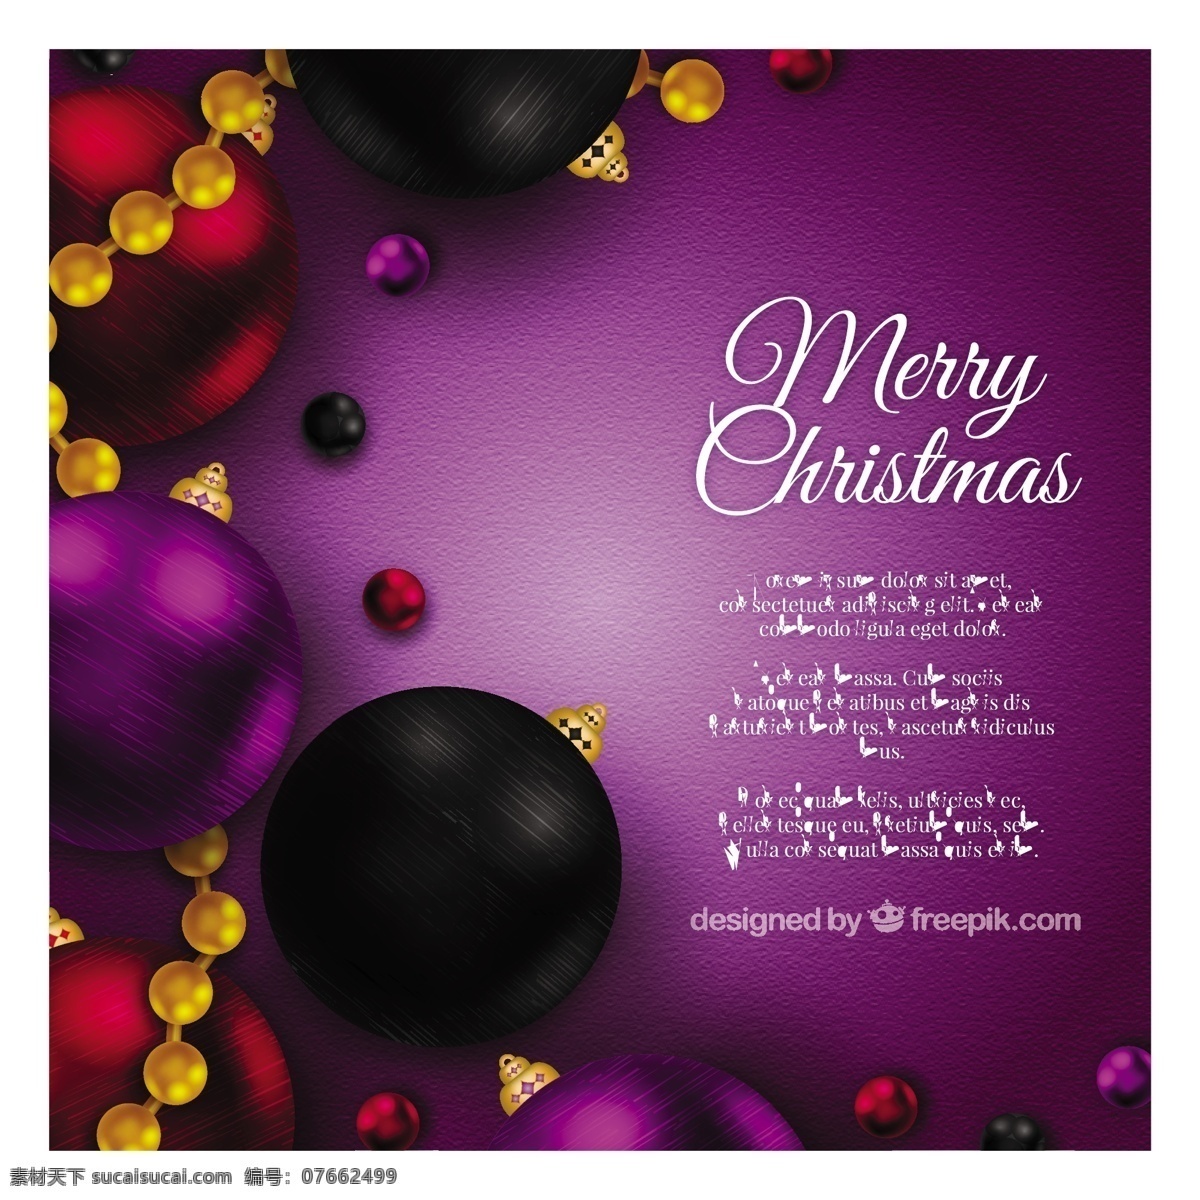 现实 圣诞 背景 紫色的颜色 圣诞节 圣诞快乐 冬天快乐 圣诞的颜色 庆祝节日 紫色的球 色彩的背景下 节日快乐 紫色的背景 冬天的背景 圣诞球 玩具 球季